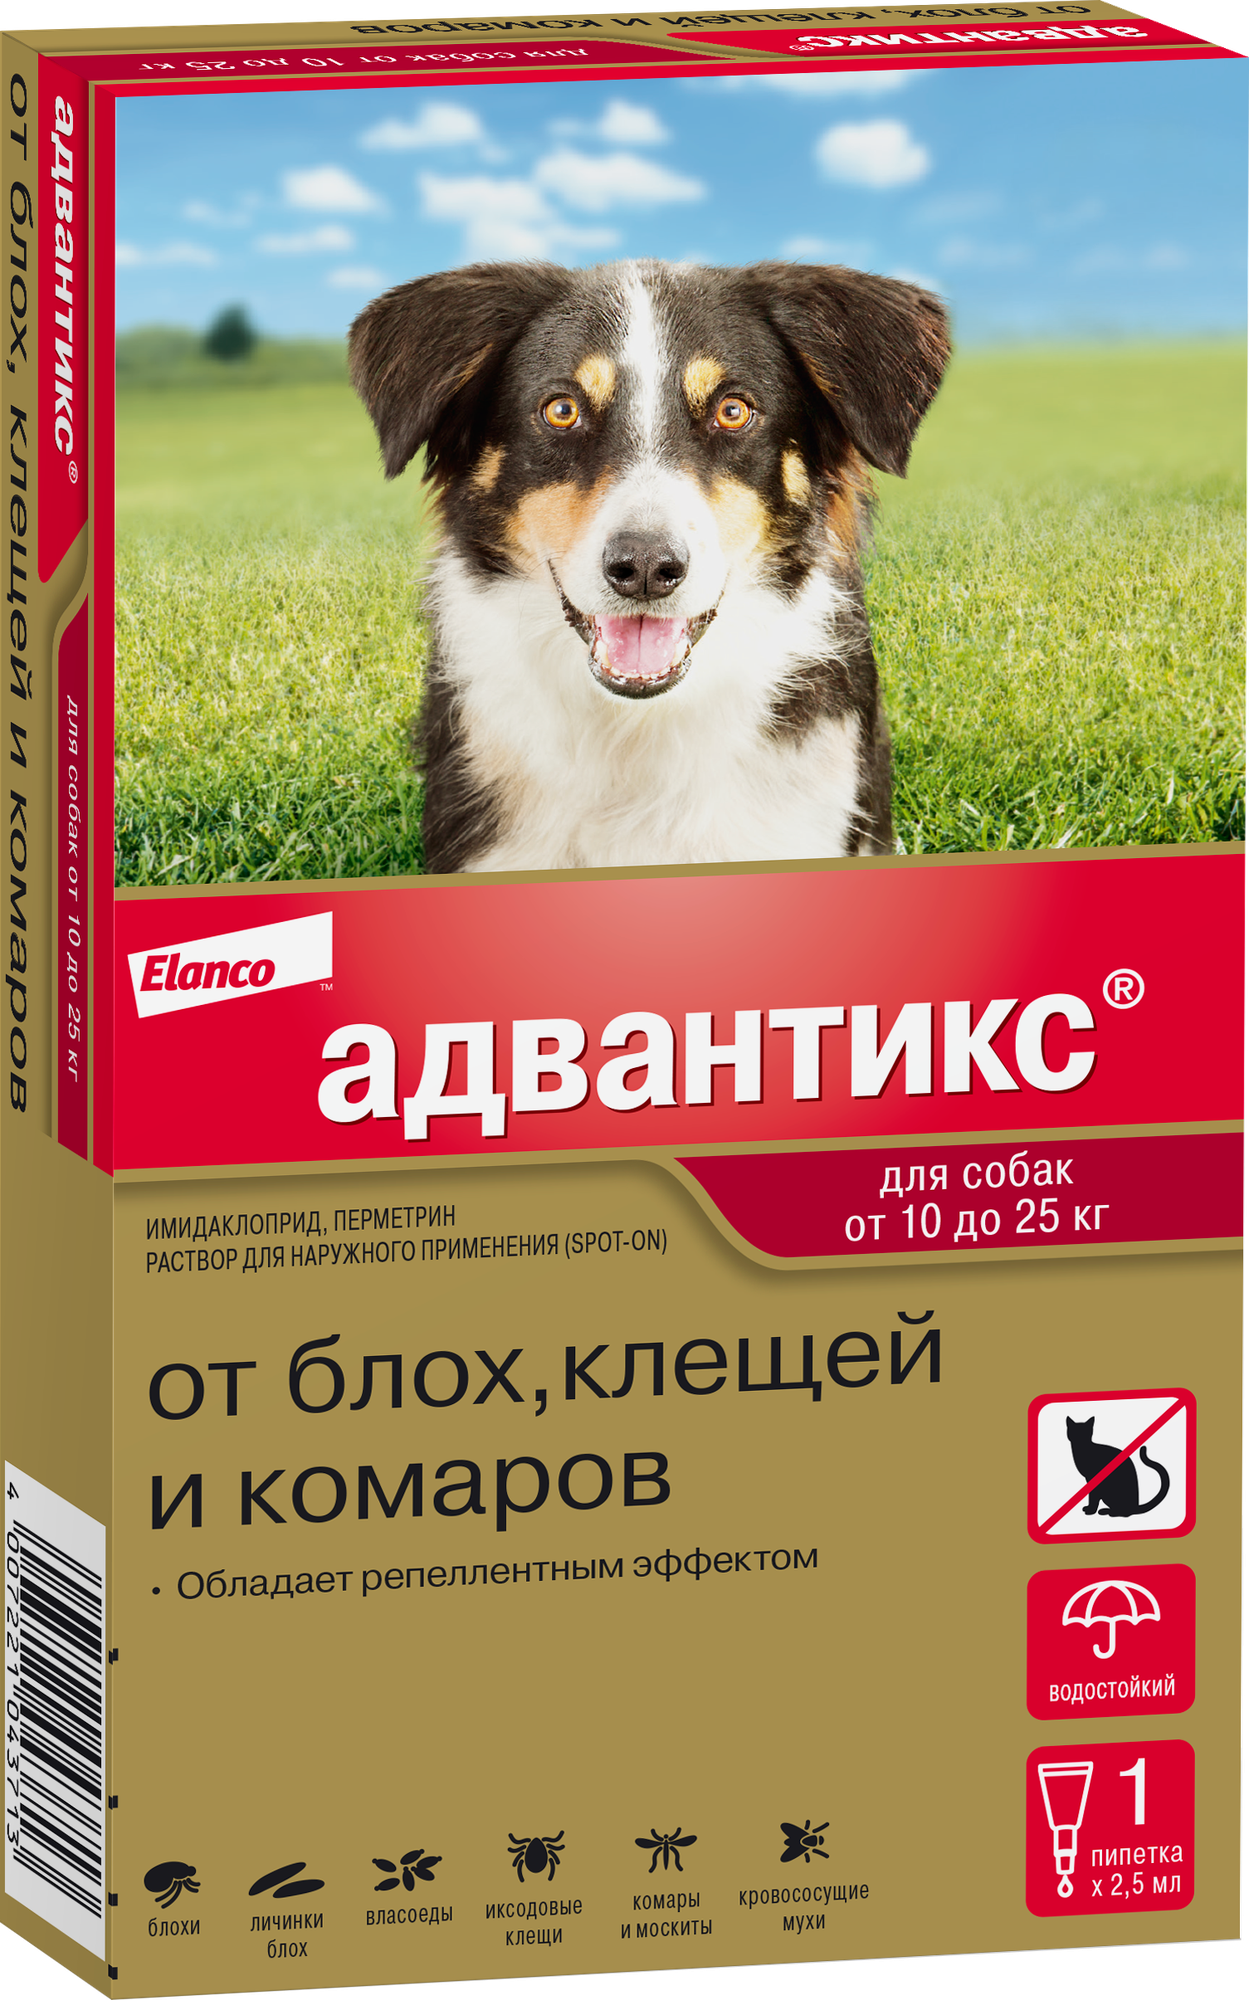 Адвантикс (Elanco) для собак от 10 до 25 кг для защиты от блох, иксодовых  клещей и летающих насекомых и переносимых ими заболеваний, 4 пипетки в  упаковке — купить в интернет-магазине по низкой